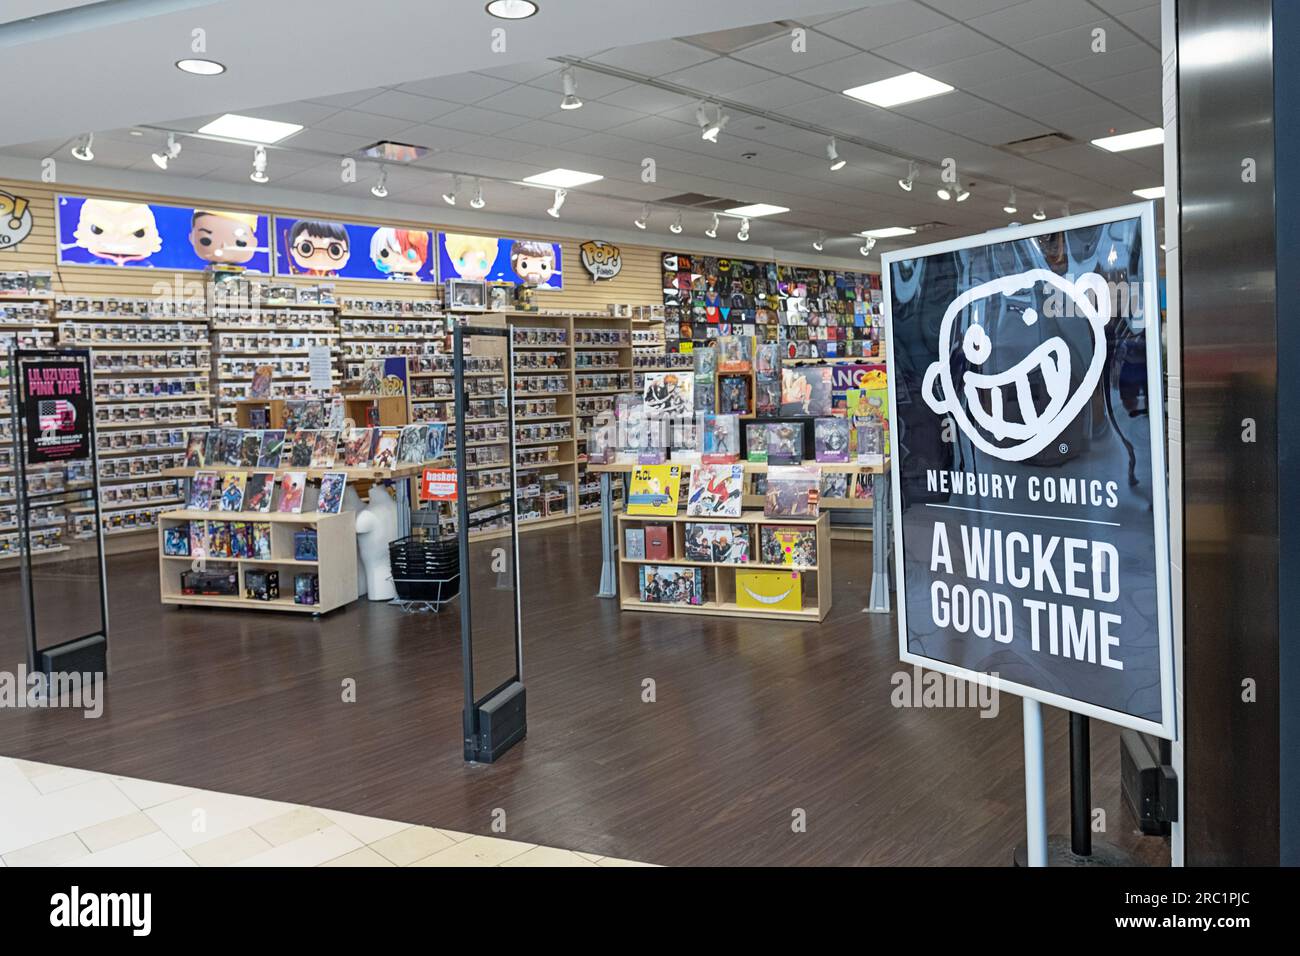 L'ingresso alla Newbury Comics offre ai clienti un buon momento. Al centro commerciale Danbury Fair di Danbury, Connecticut. Foto Stock